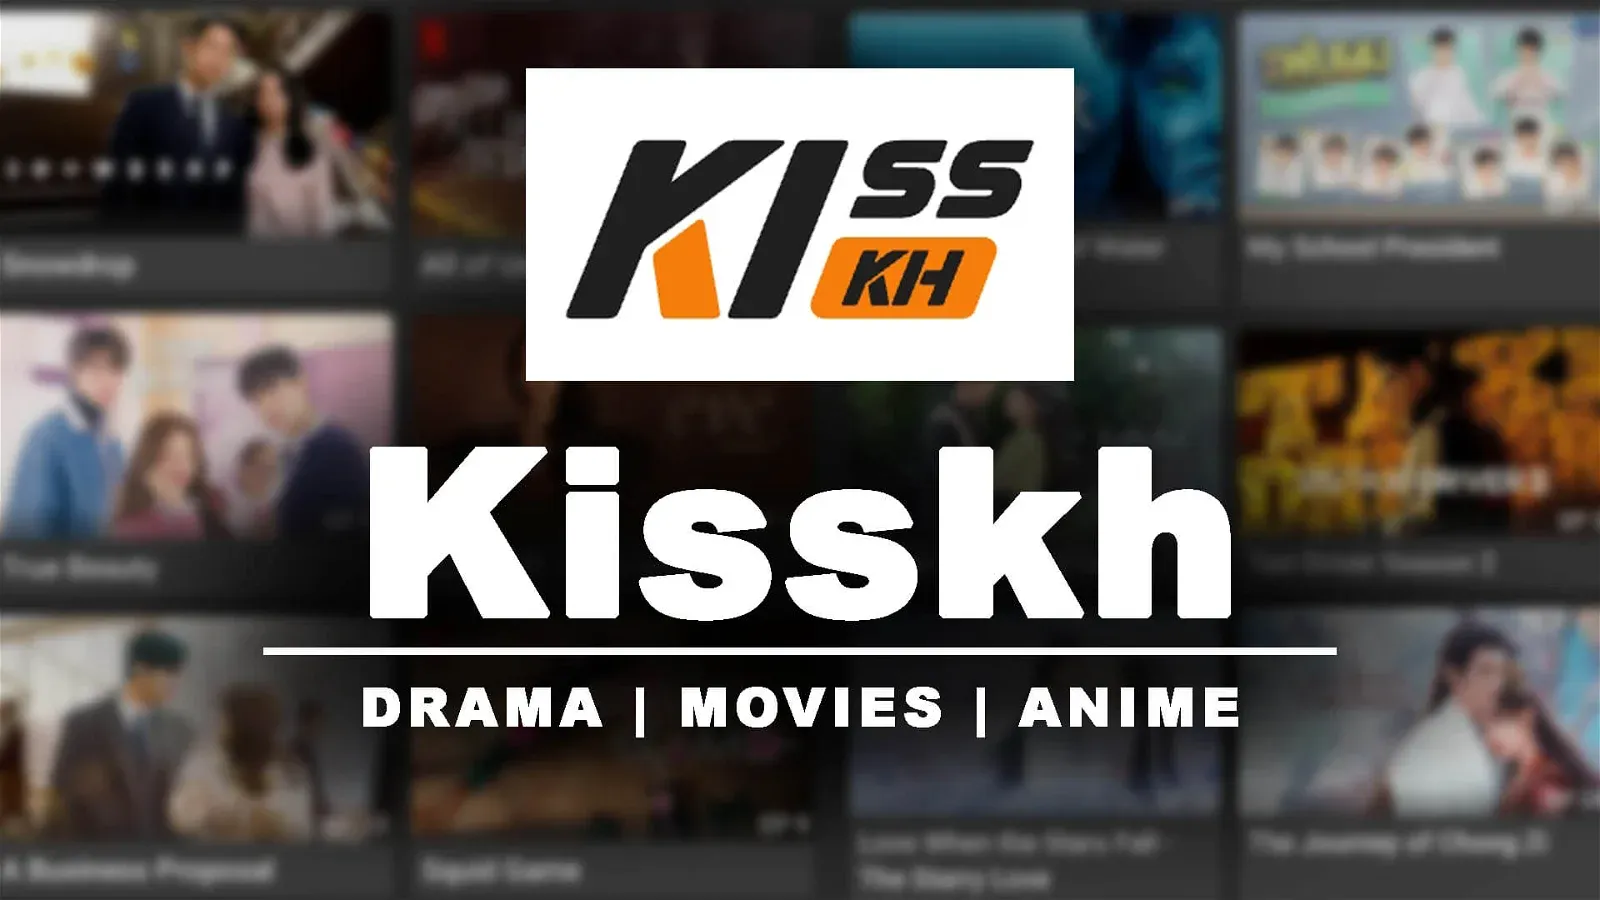 تحميل تطبيق Kisskh